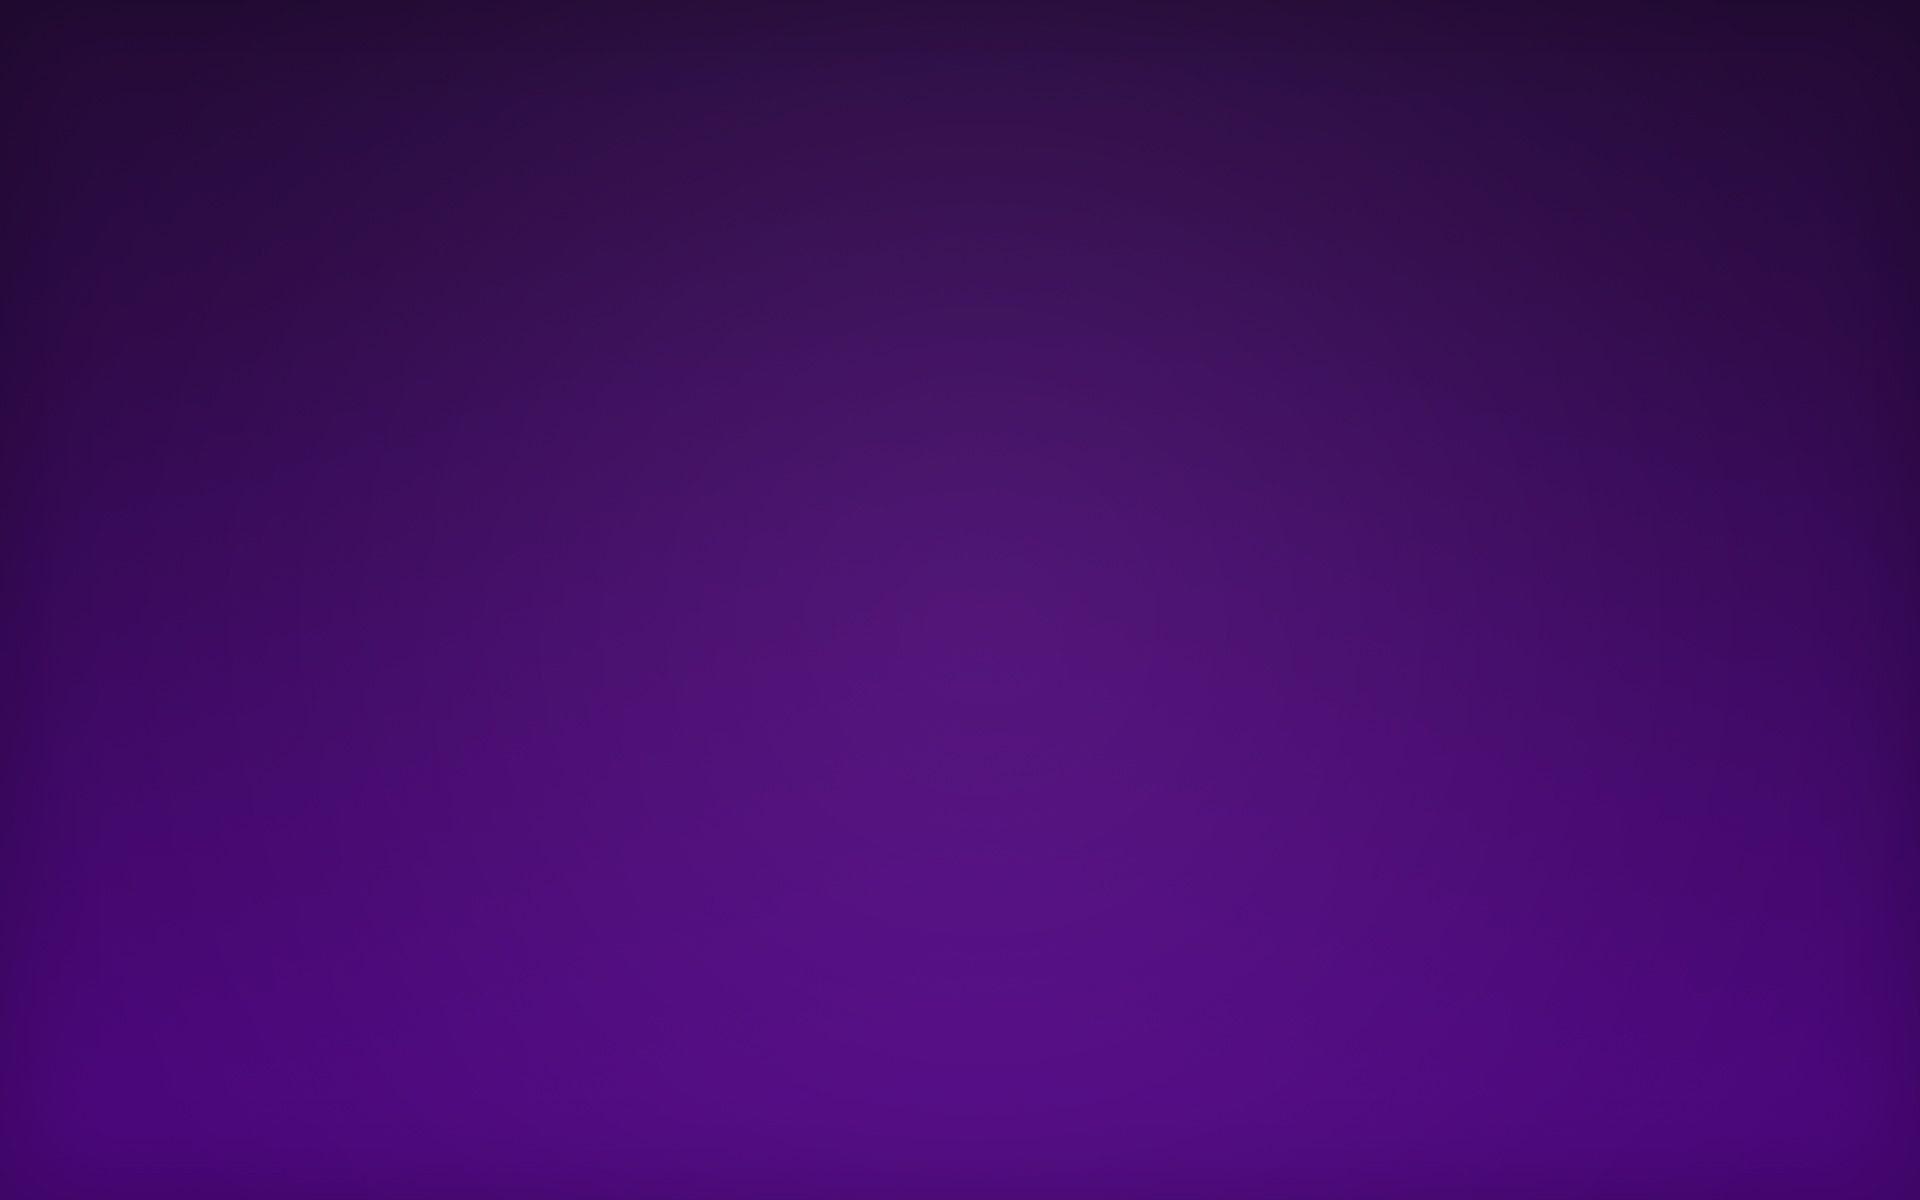 Dark Purple Aesthetic Wallpapers - Top Free Dark Purple ...